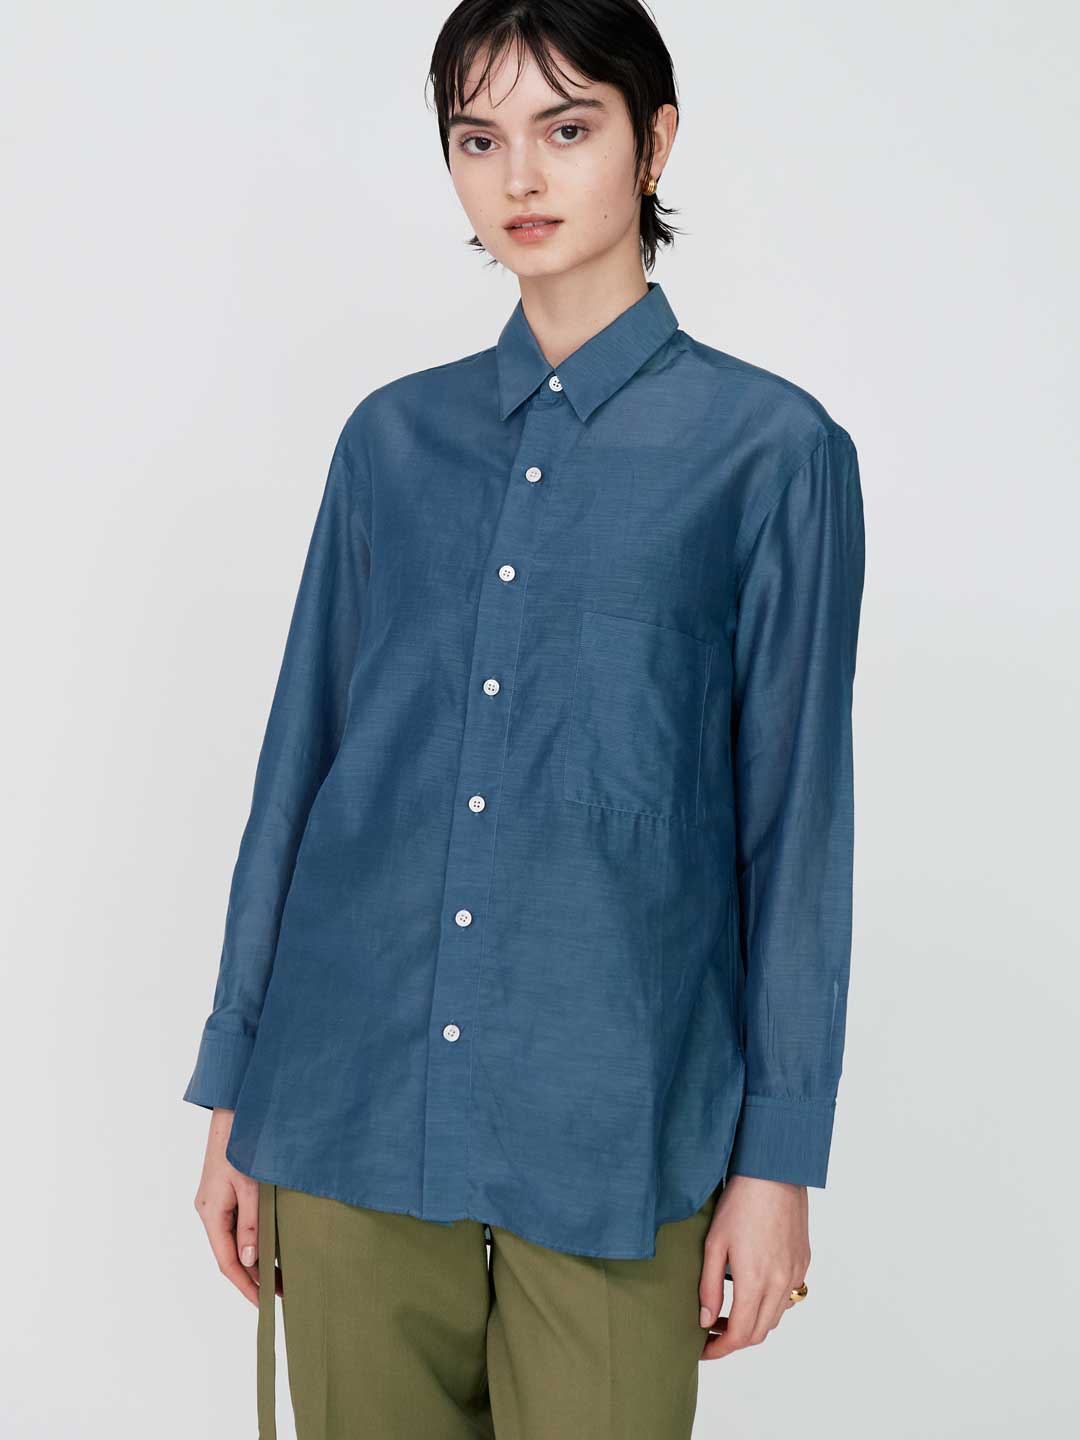 Handmade Men's Shirt - Blue